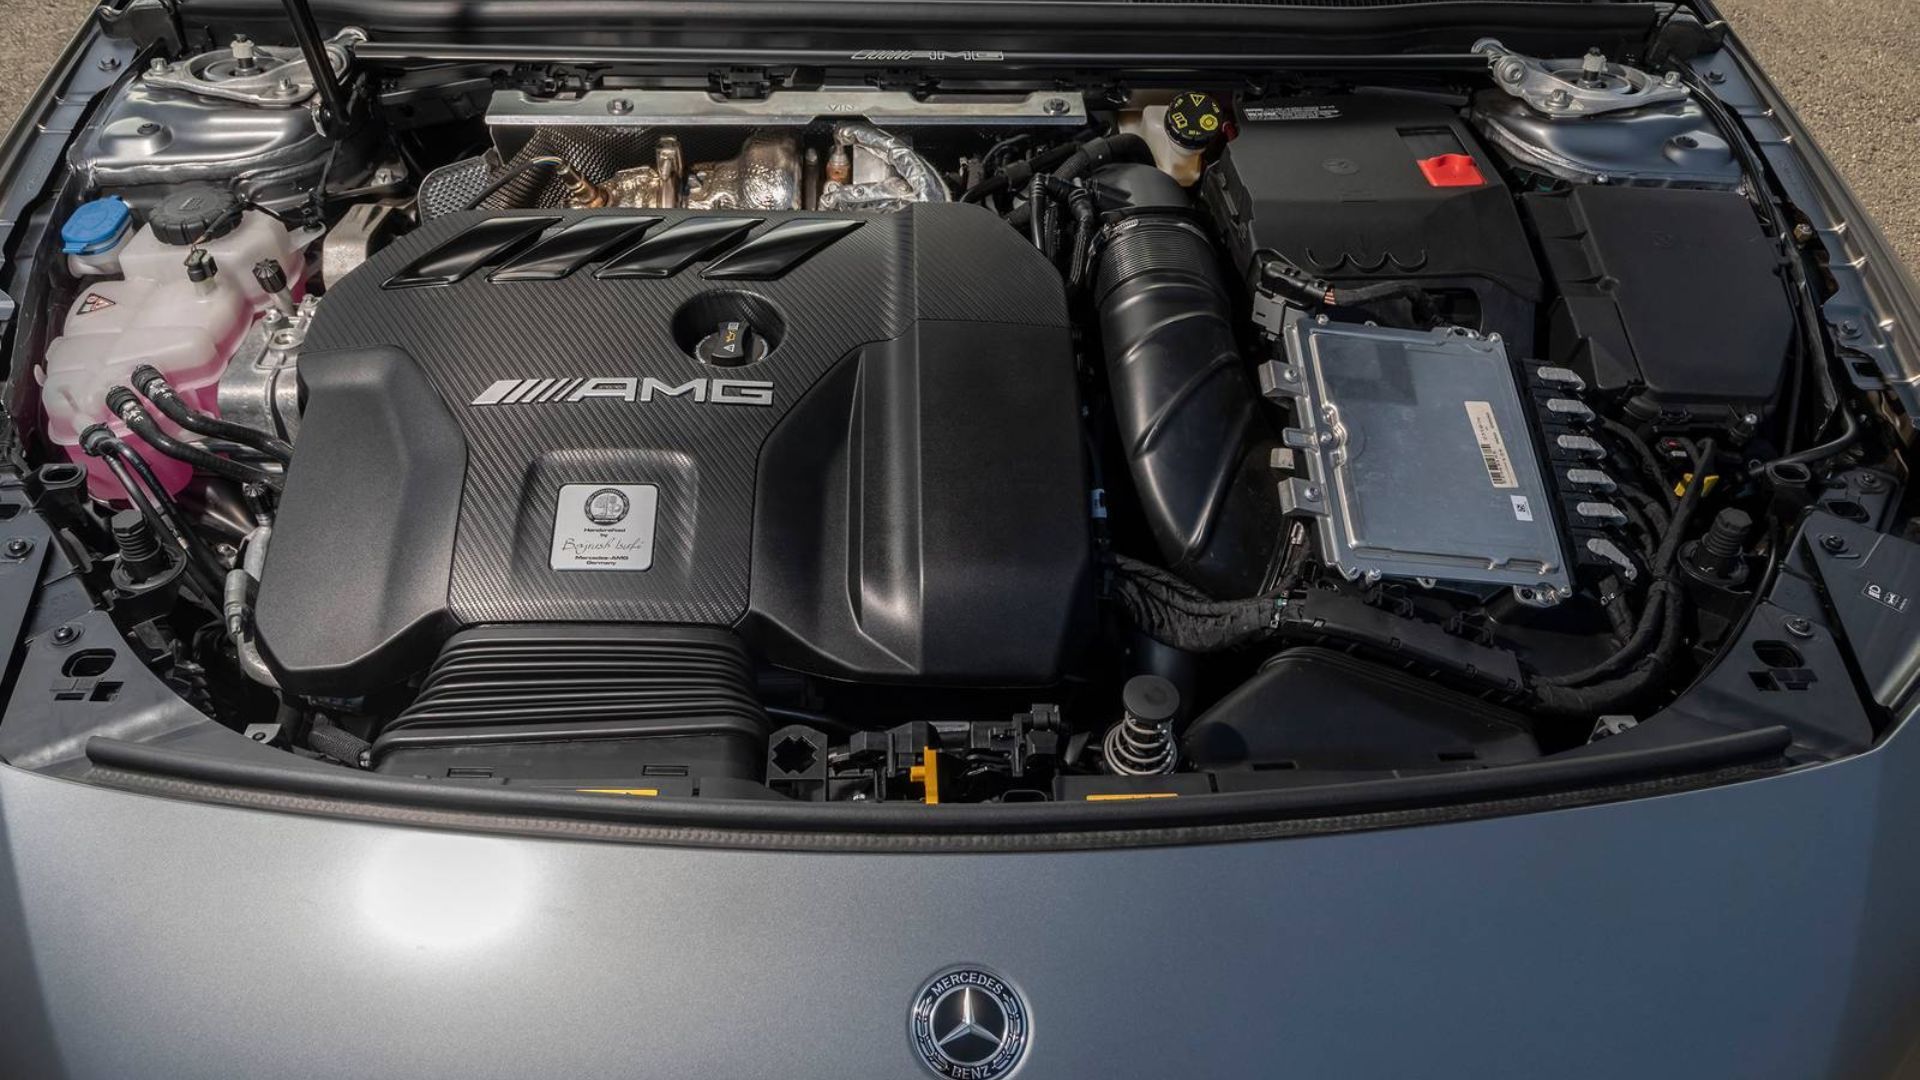 Mercedes-Benz M139 engine